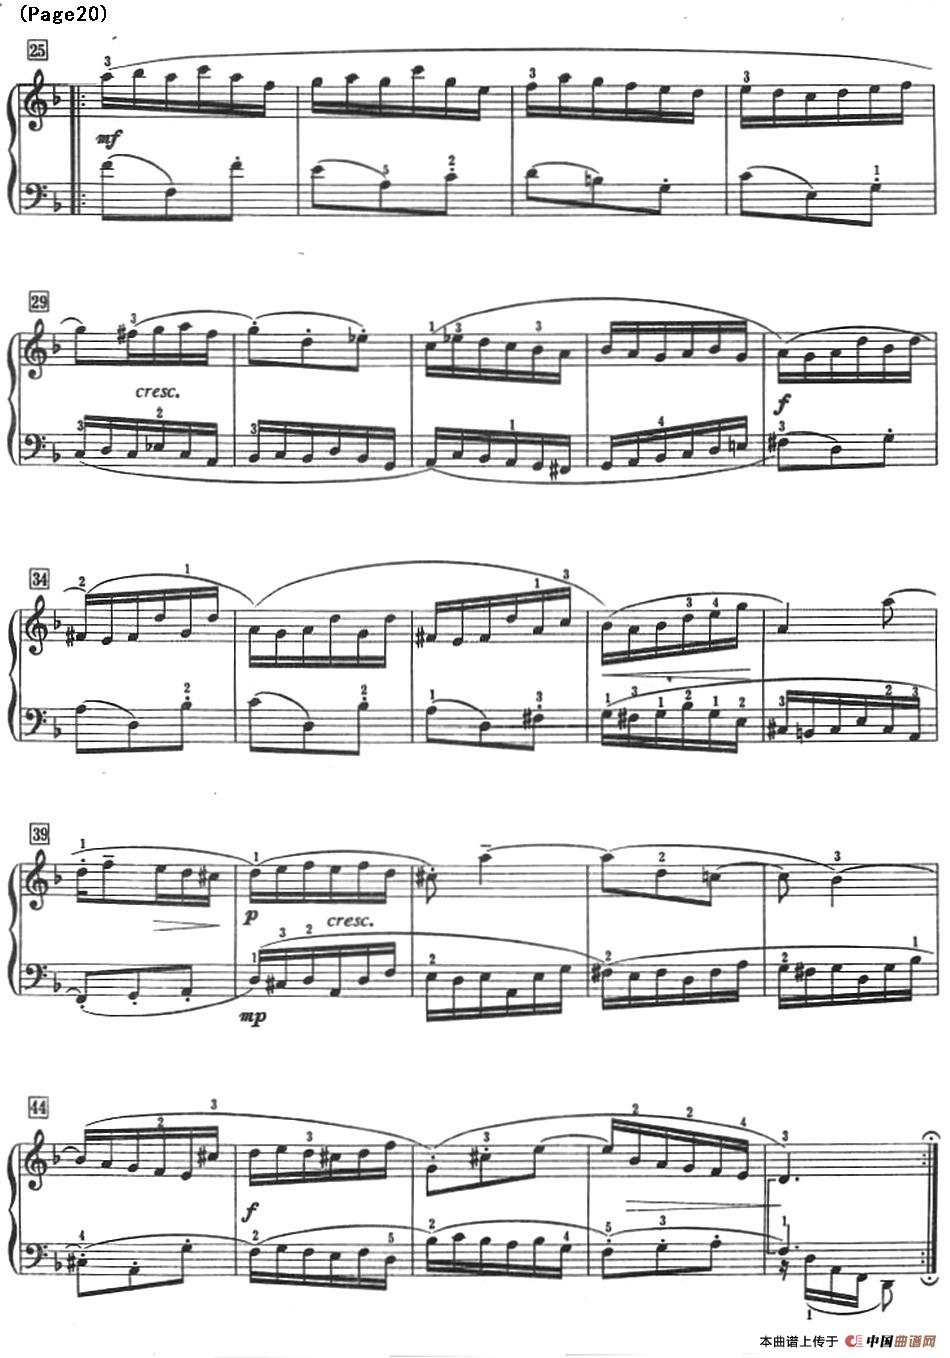 巴赫小前奏曲（NO.13-NO.16）(1)_Bach Little Prelude and Fugue_页面_25.jpg